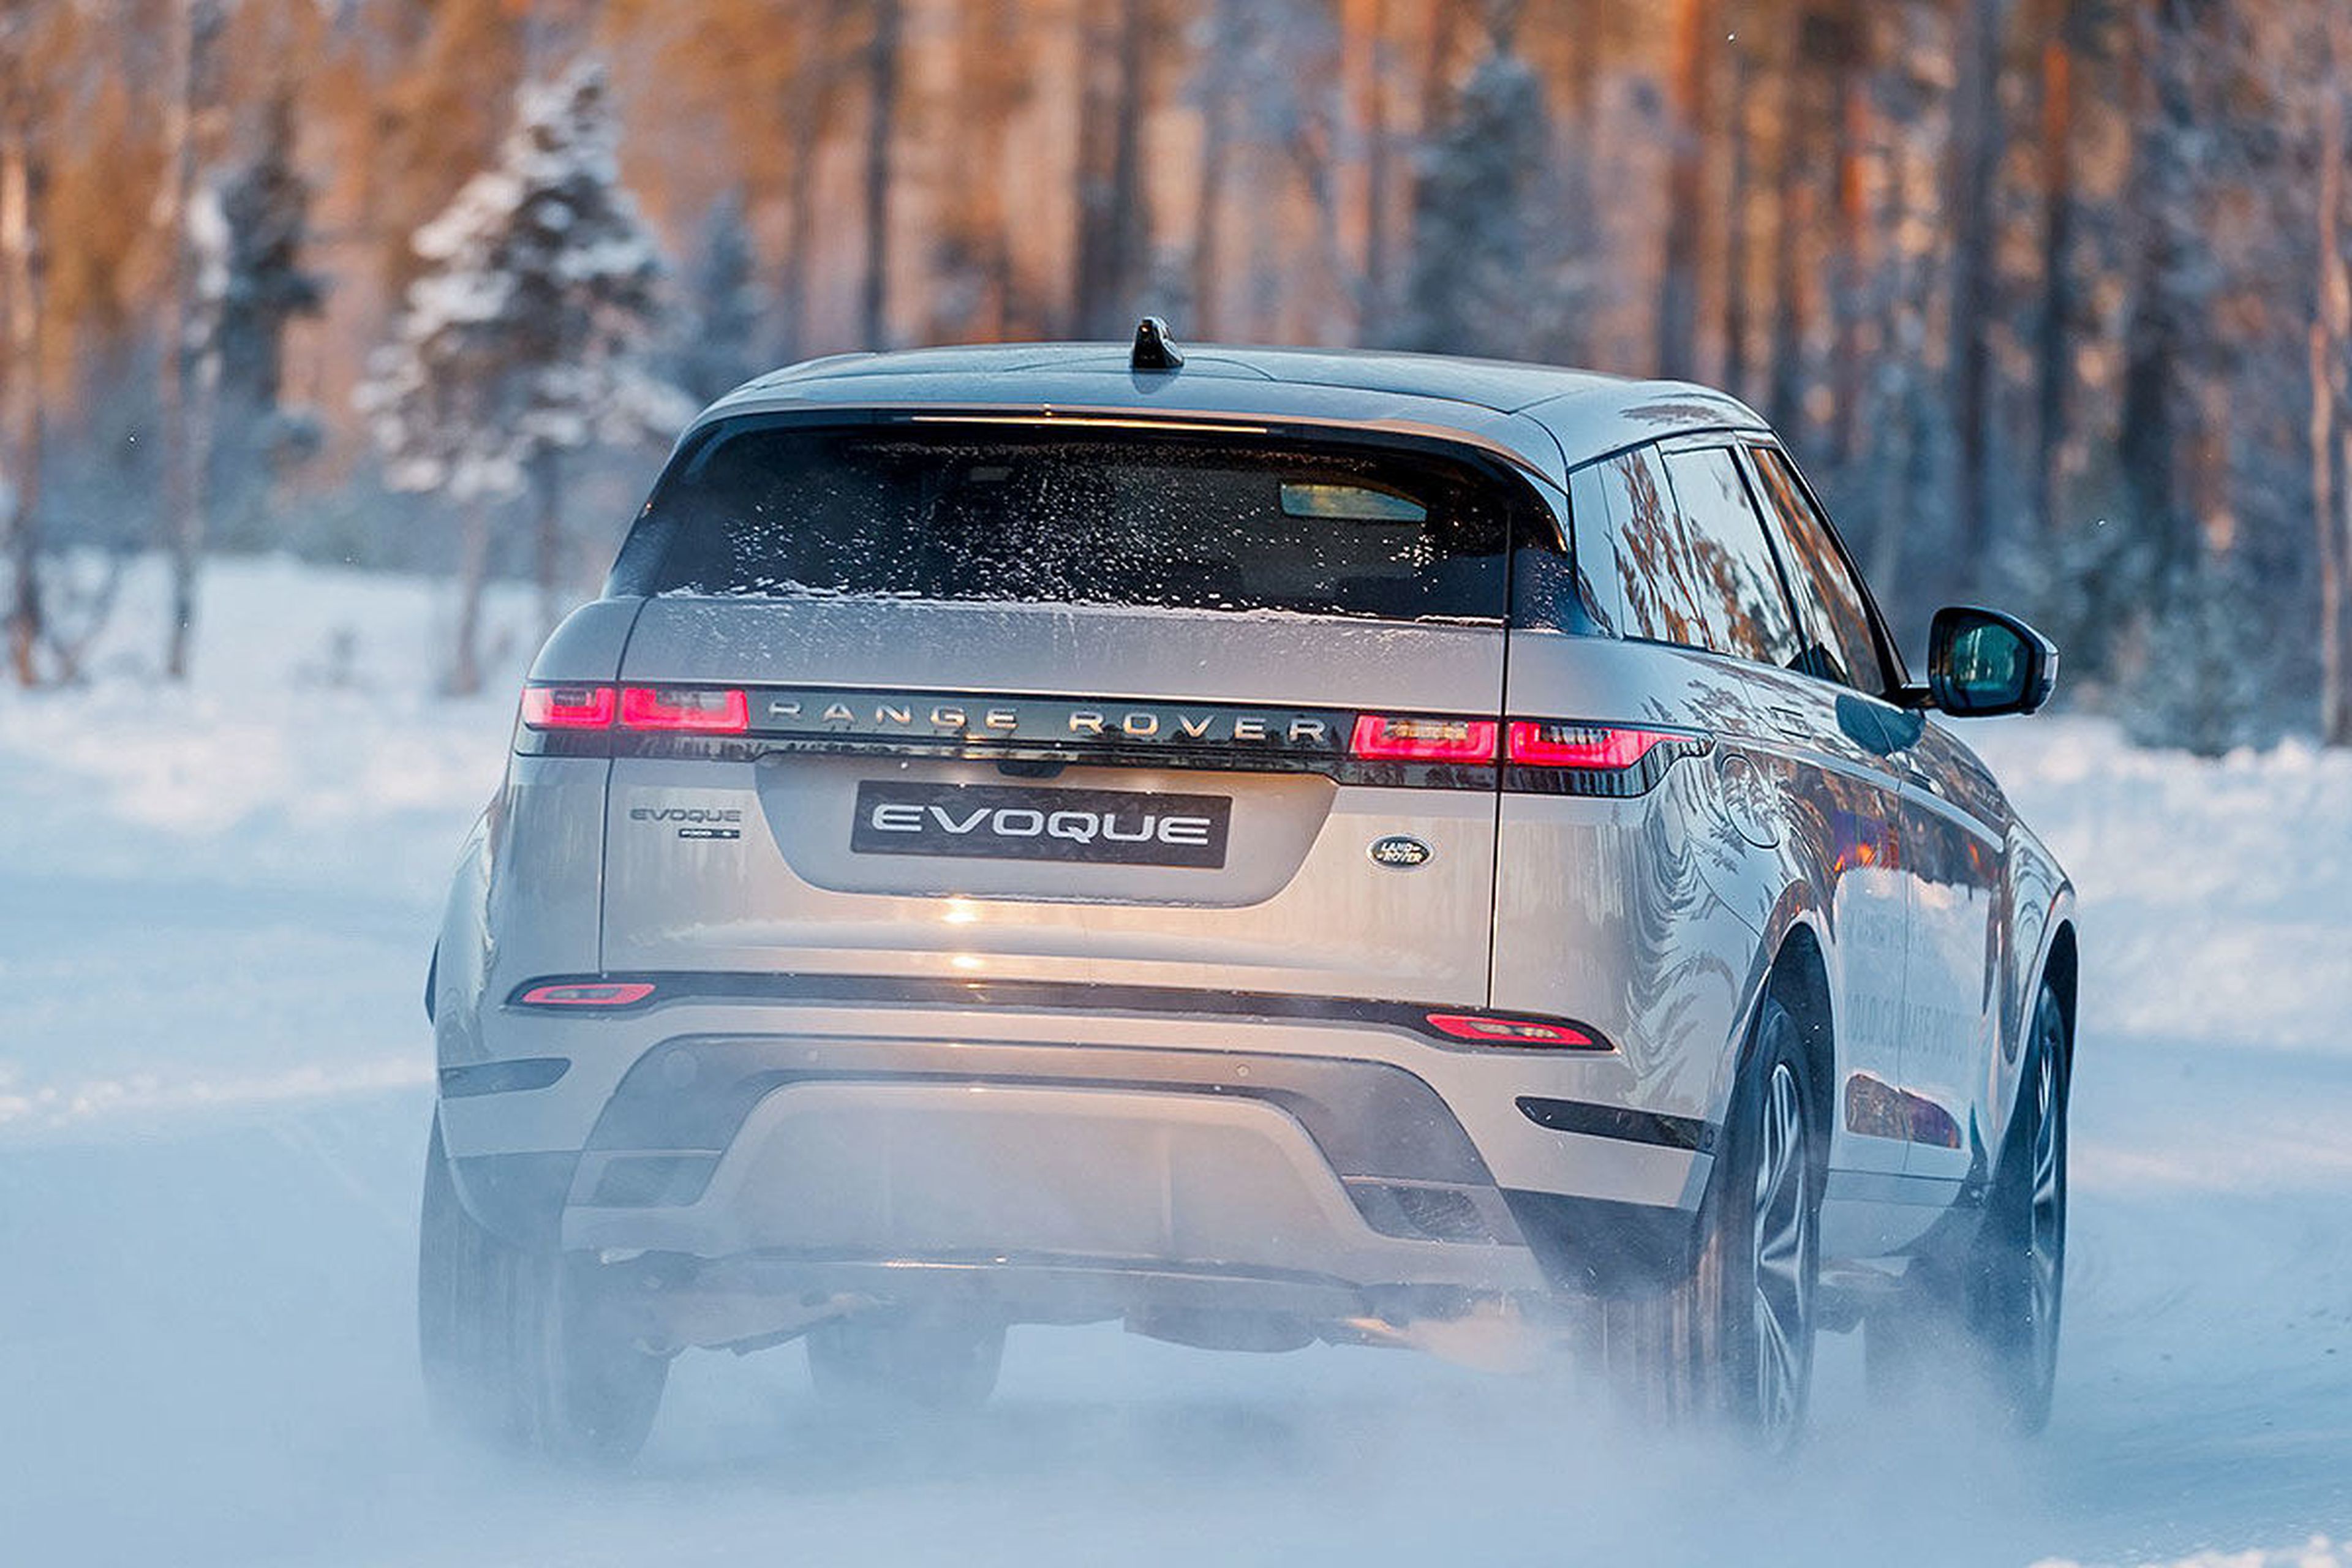 Prueba del Range Rover Evoque 2019